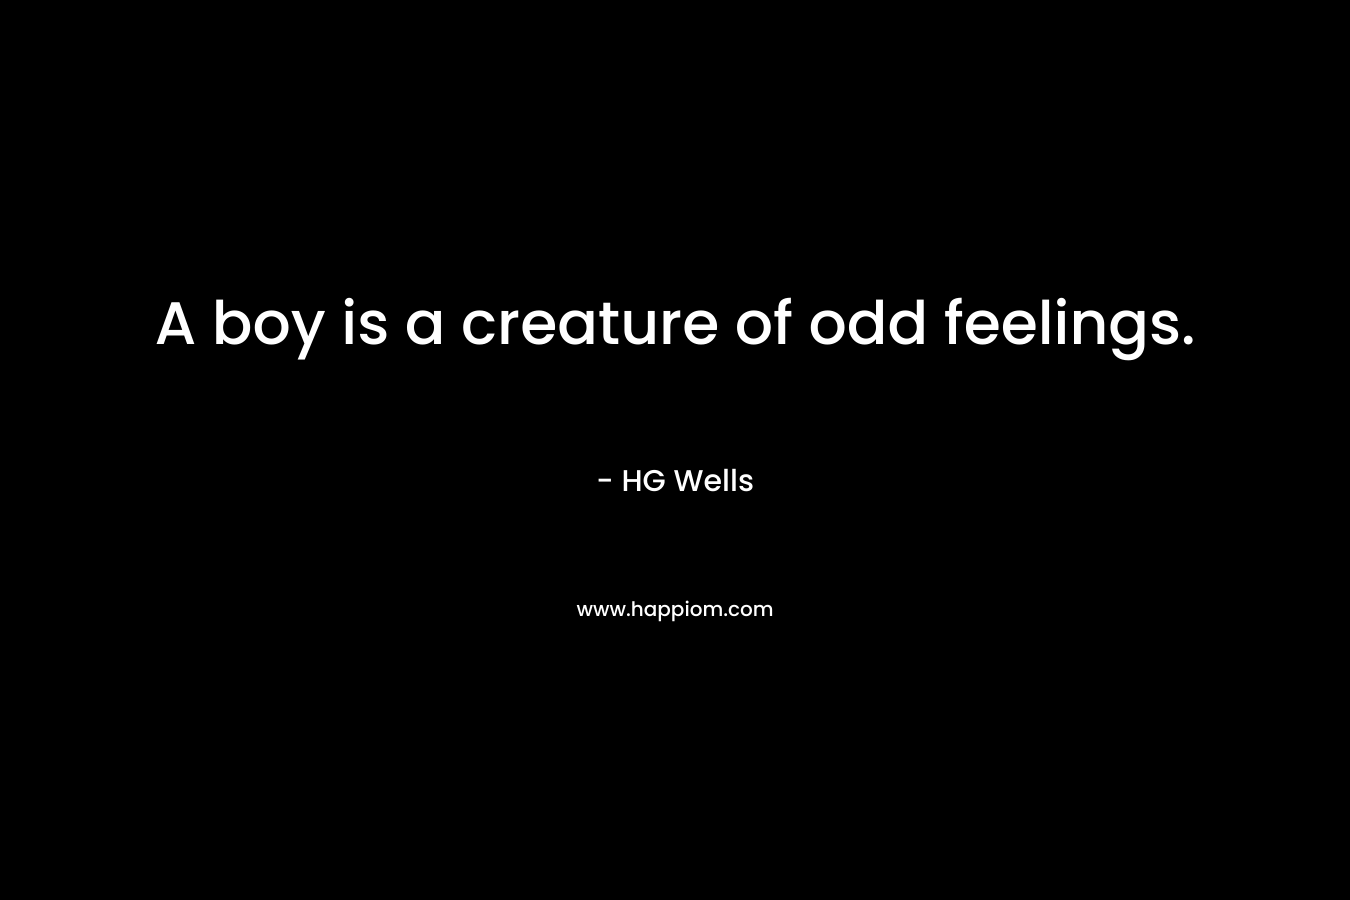 A boy is a creature of odd feelings.